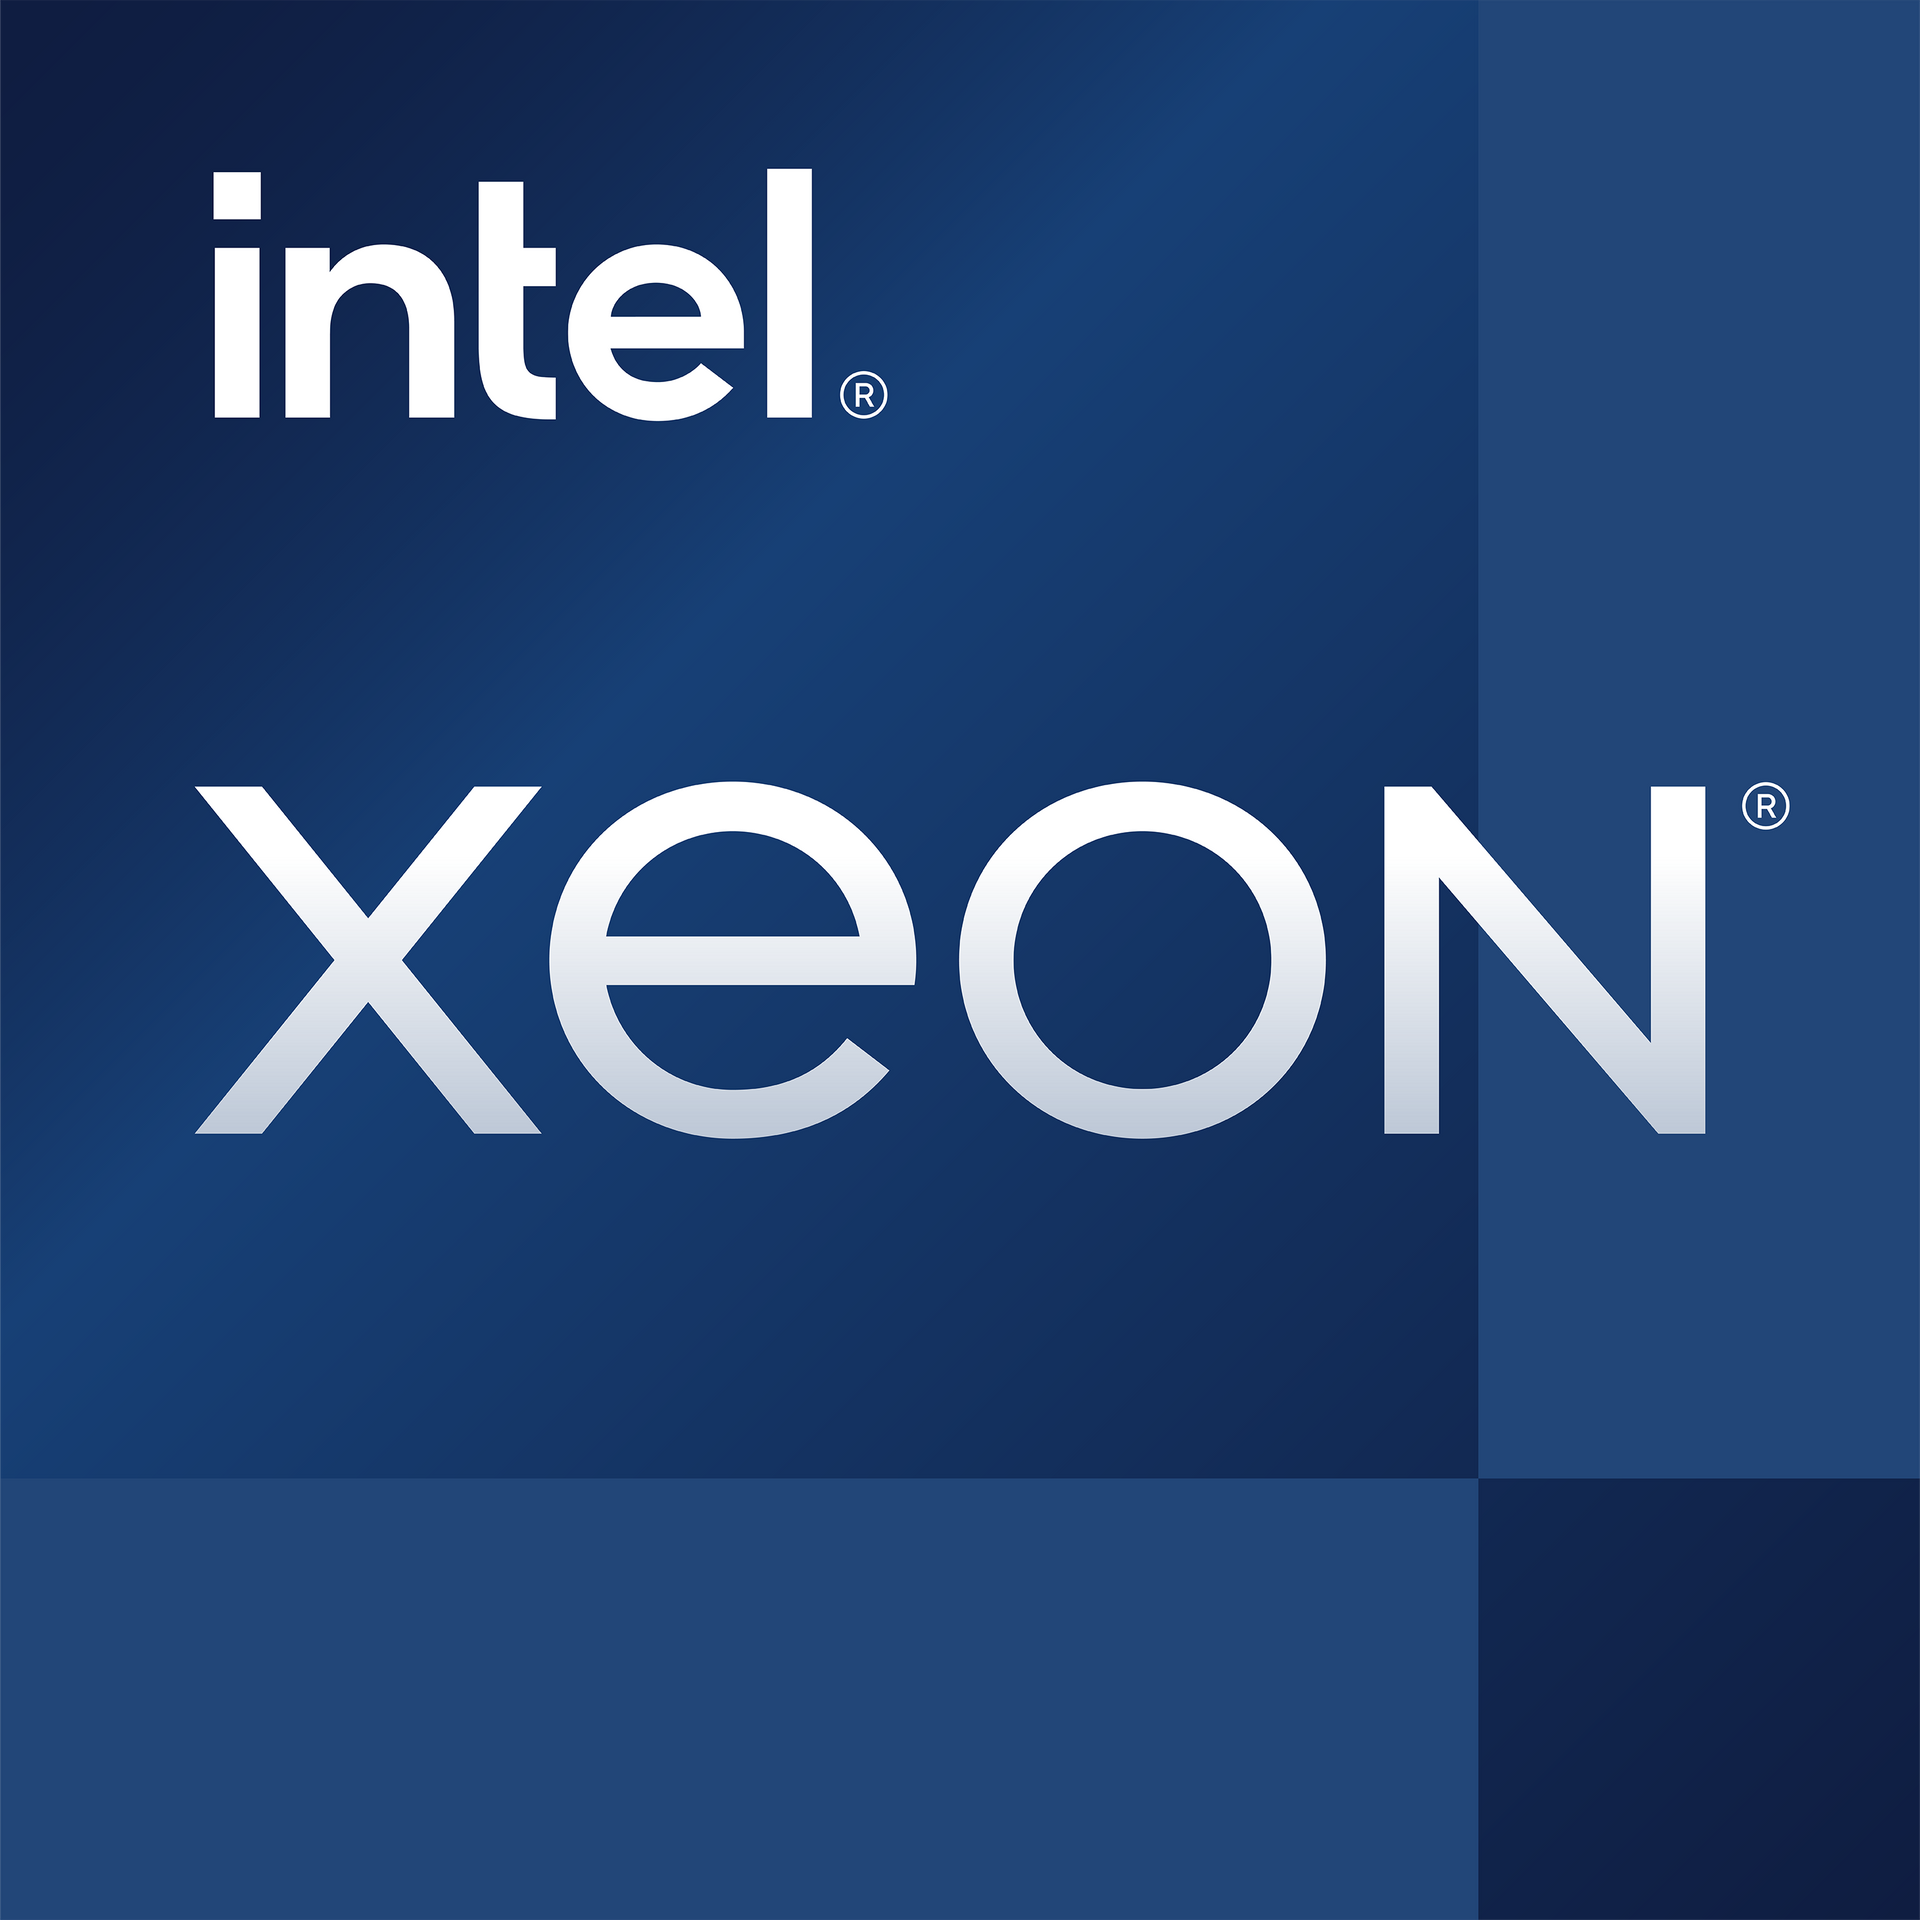 Selo Intel Xeon